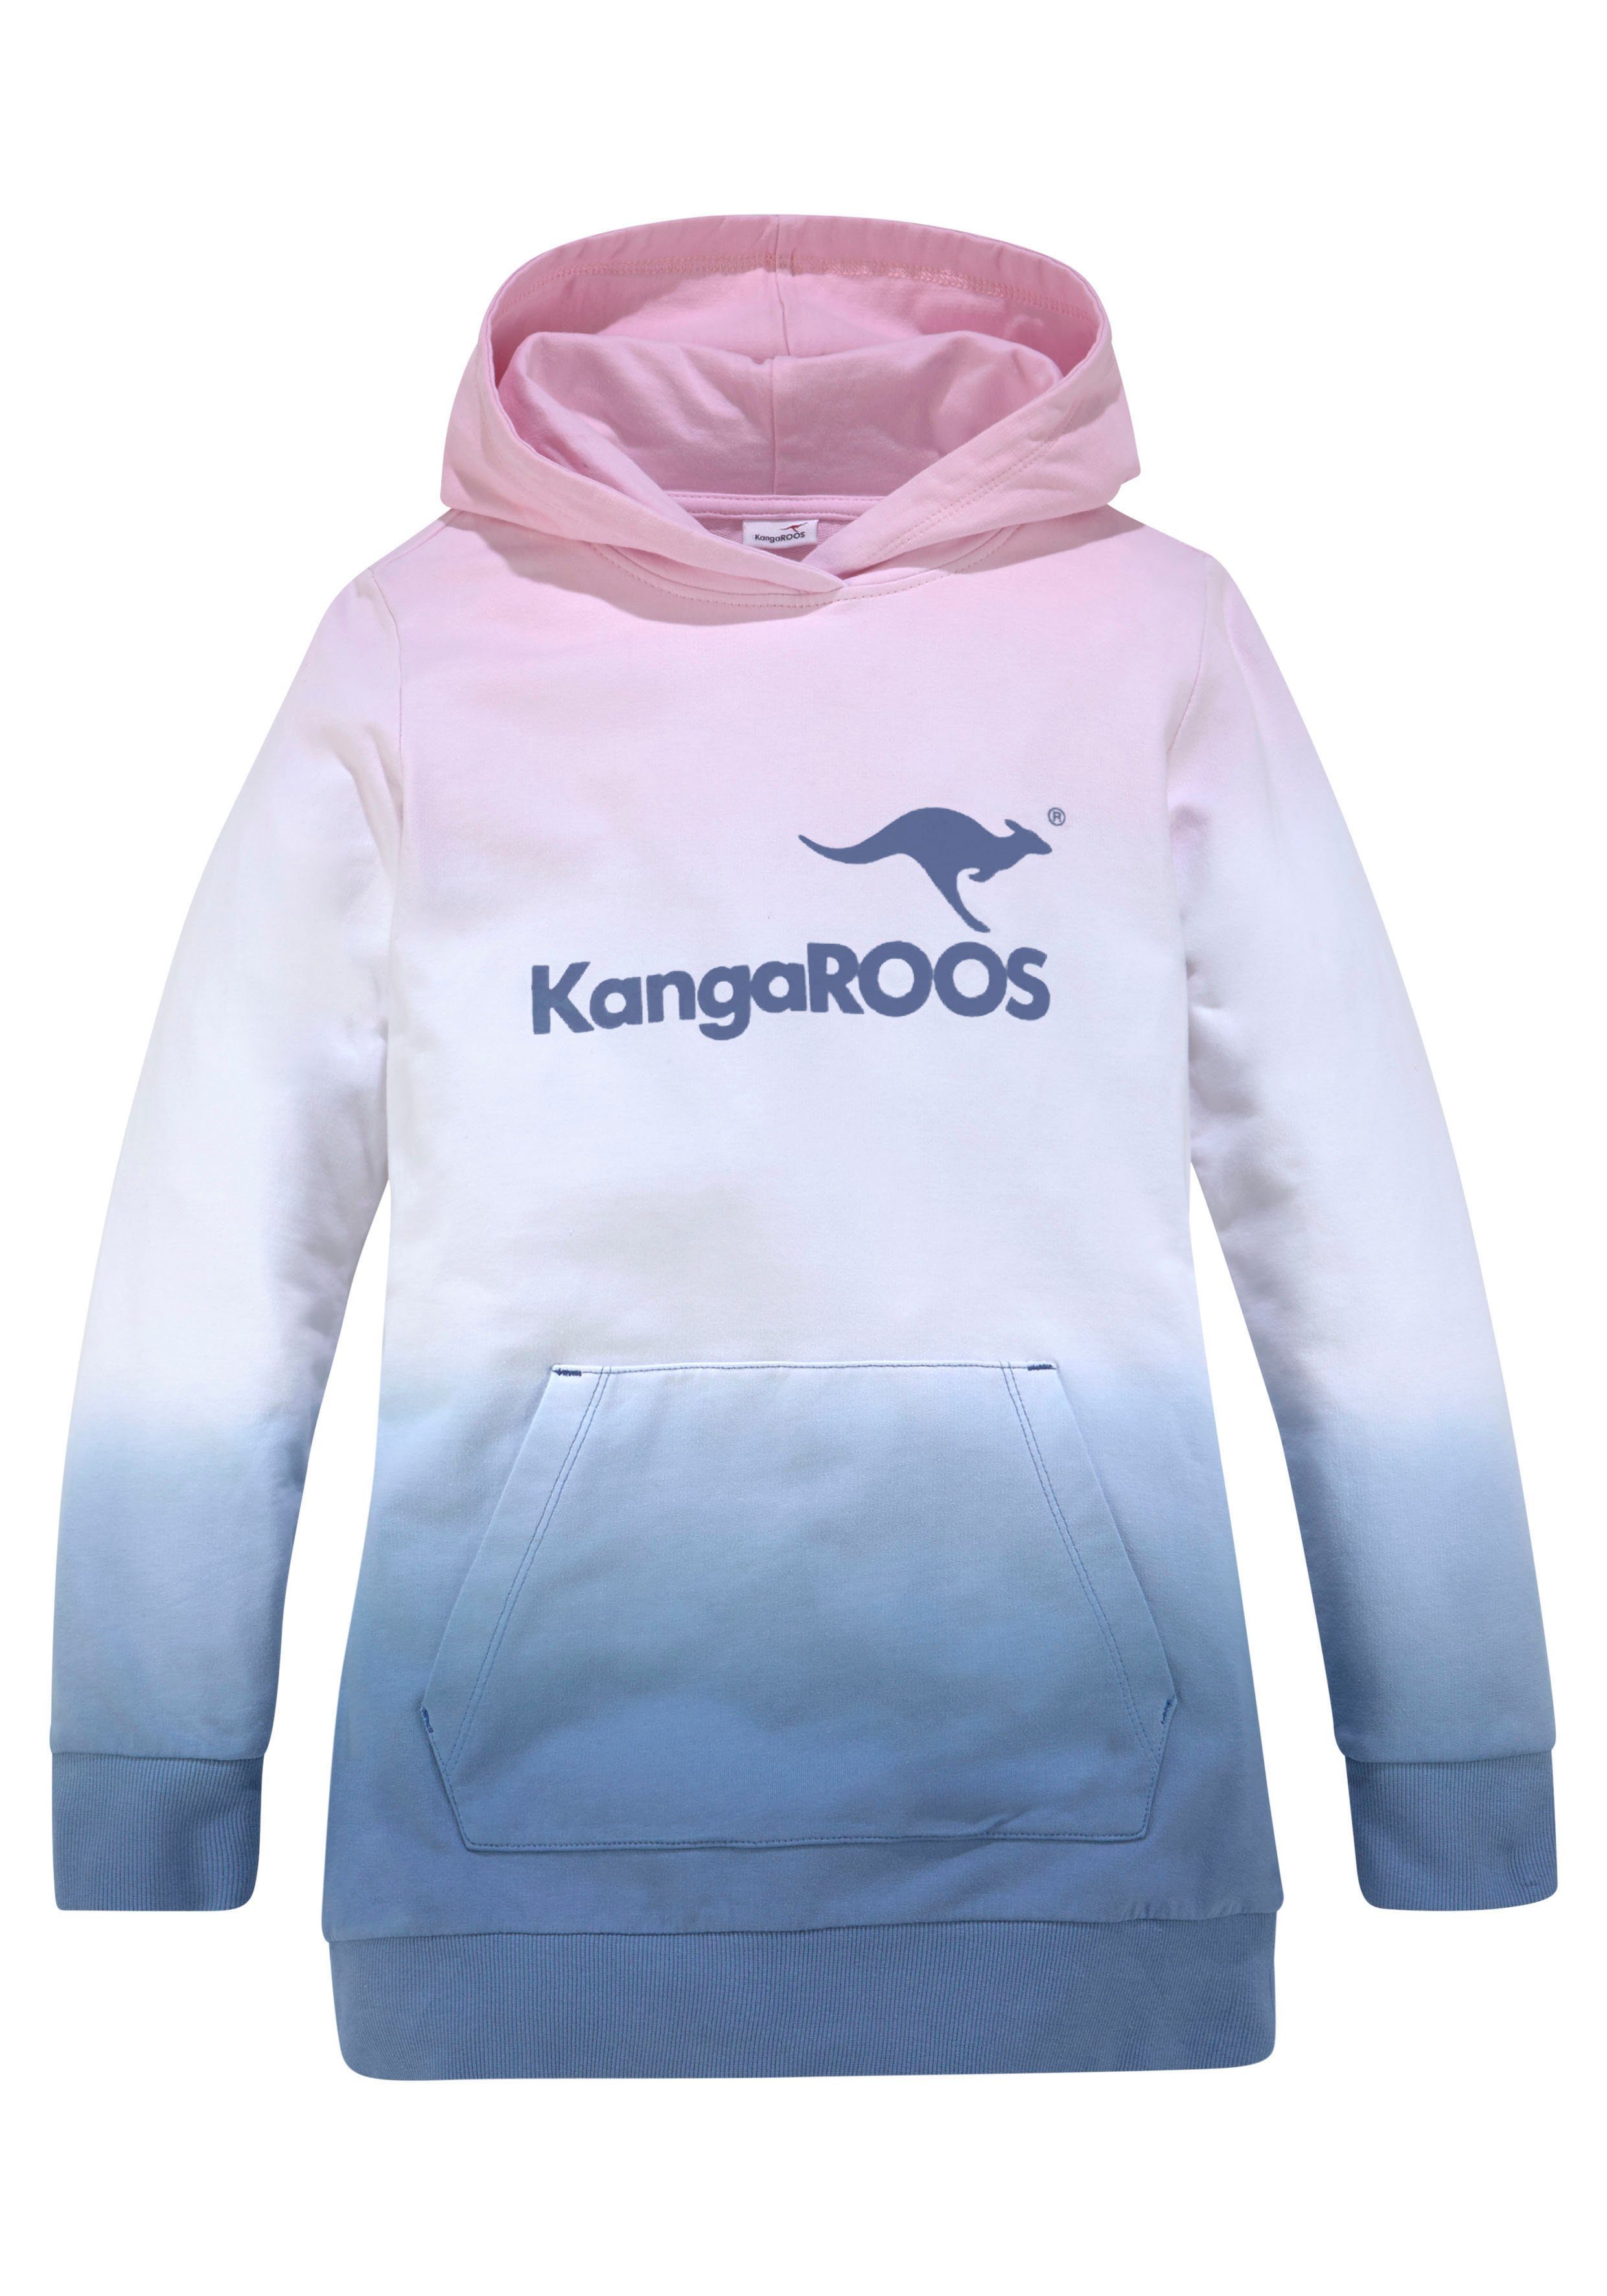 KangaROOS Kapuzensweatshirt im Farbverlauf modischen